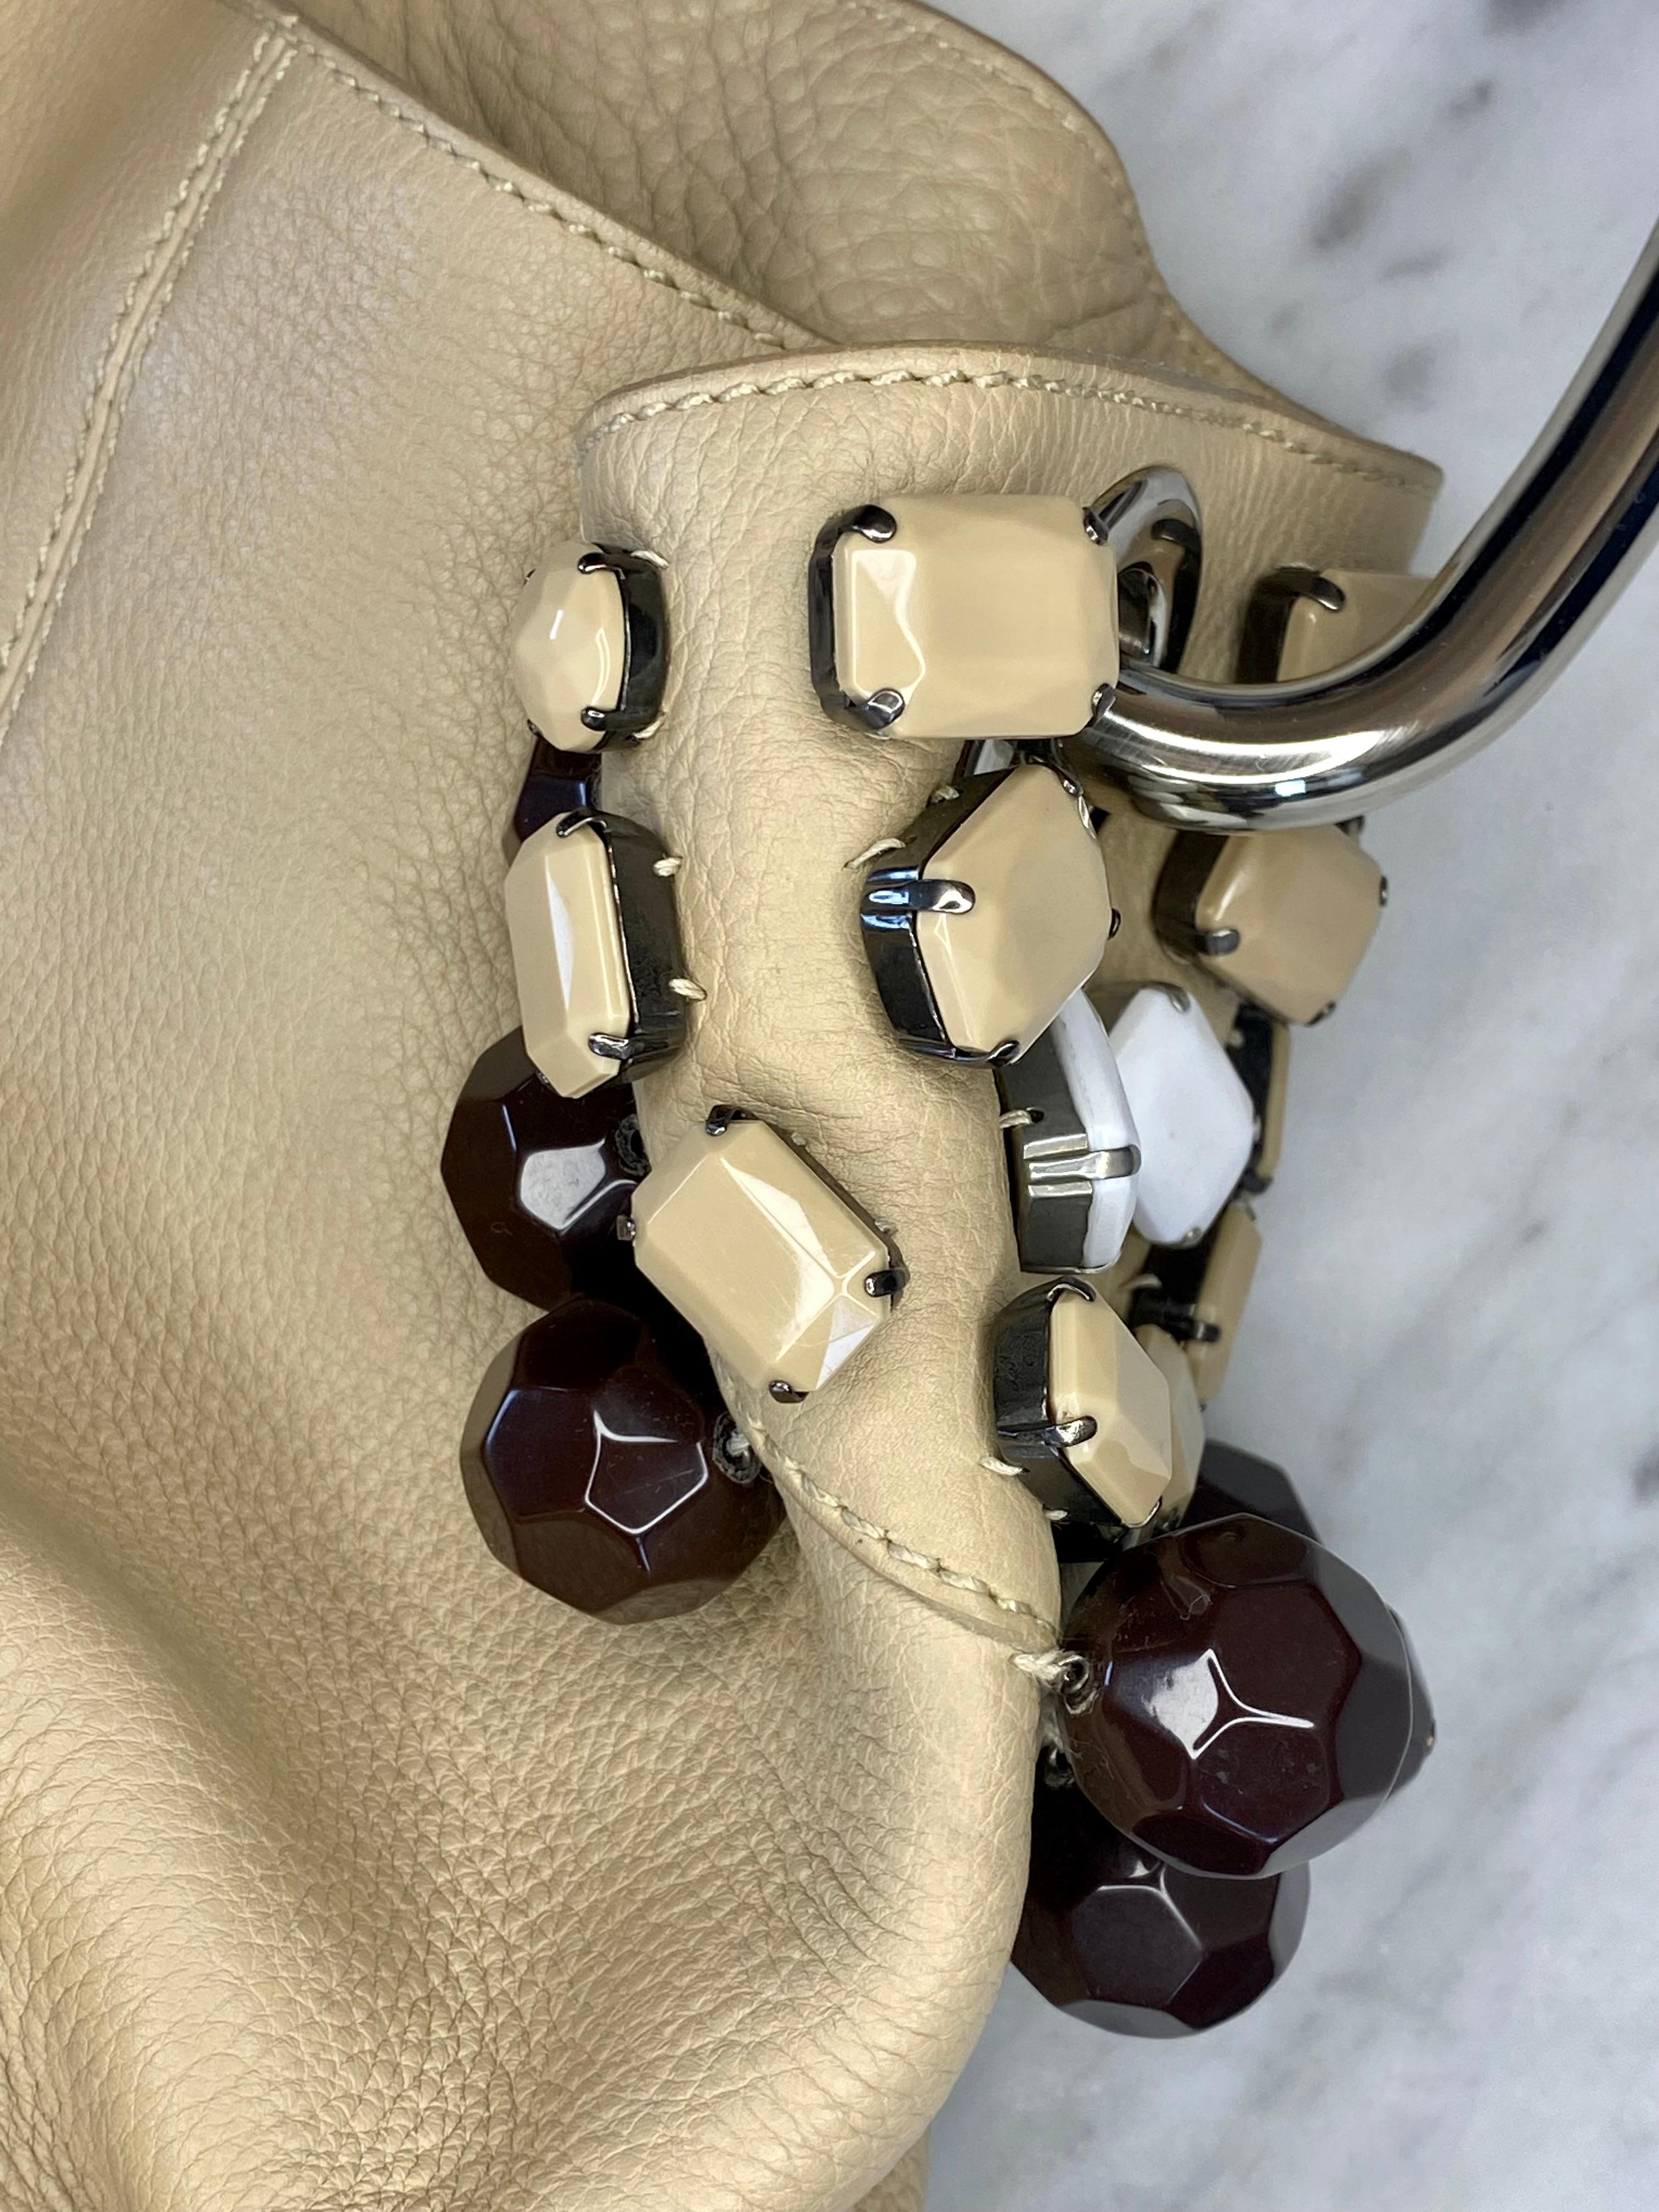 Women's or Men's S/S 2003 Prada Oversized Beaded Leather & Metal Hoop Ring Medium Hobo Bag For Sale